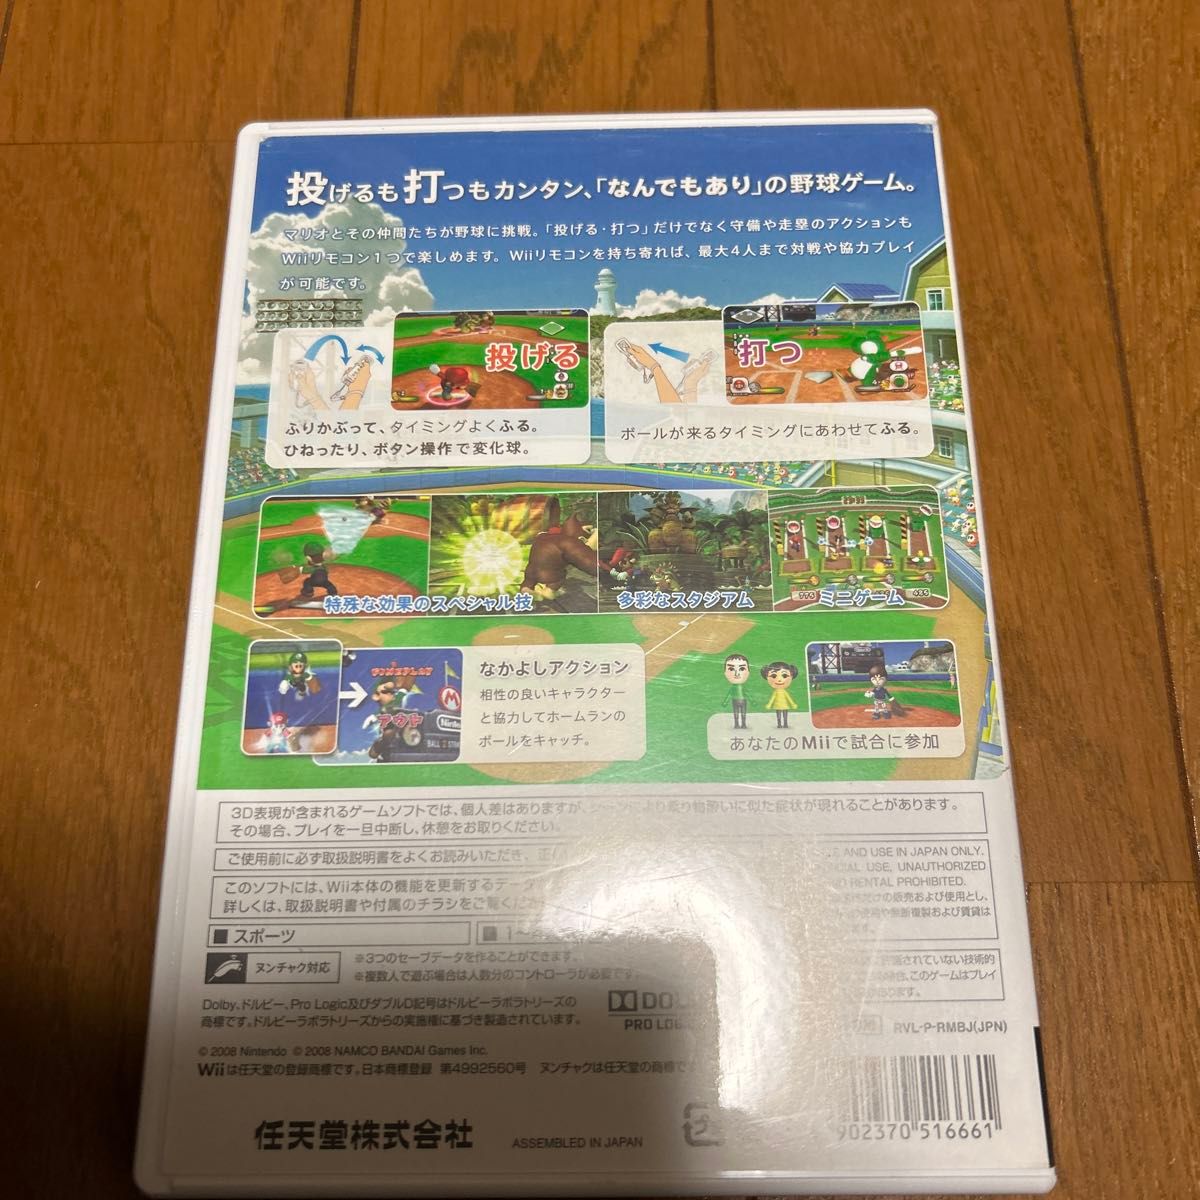  【Wii】 スーパーマリオスタジアム ファミリーベースボール